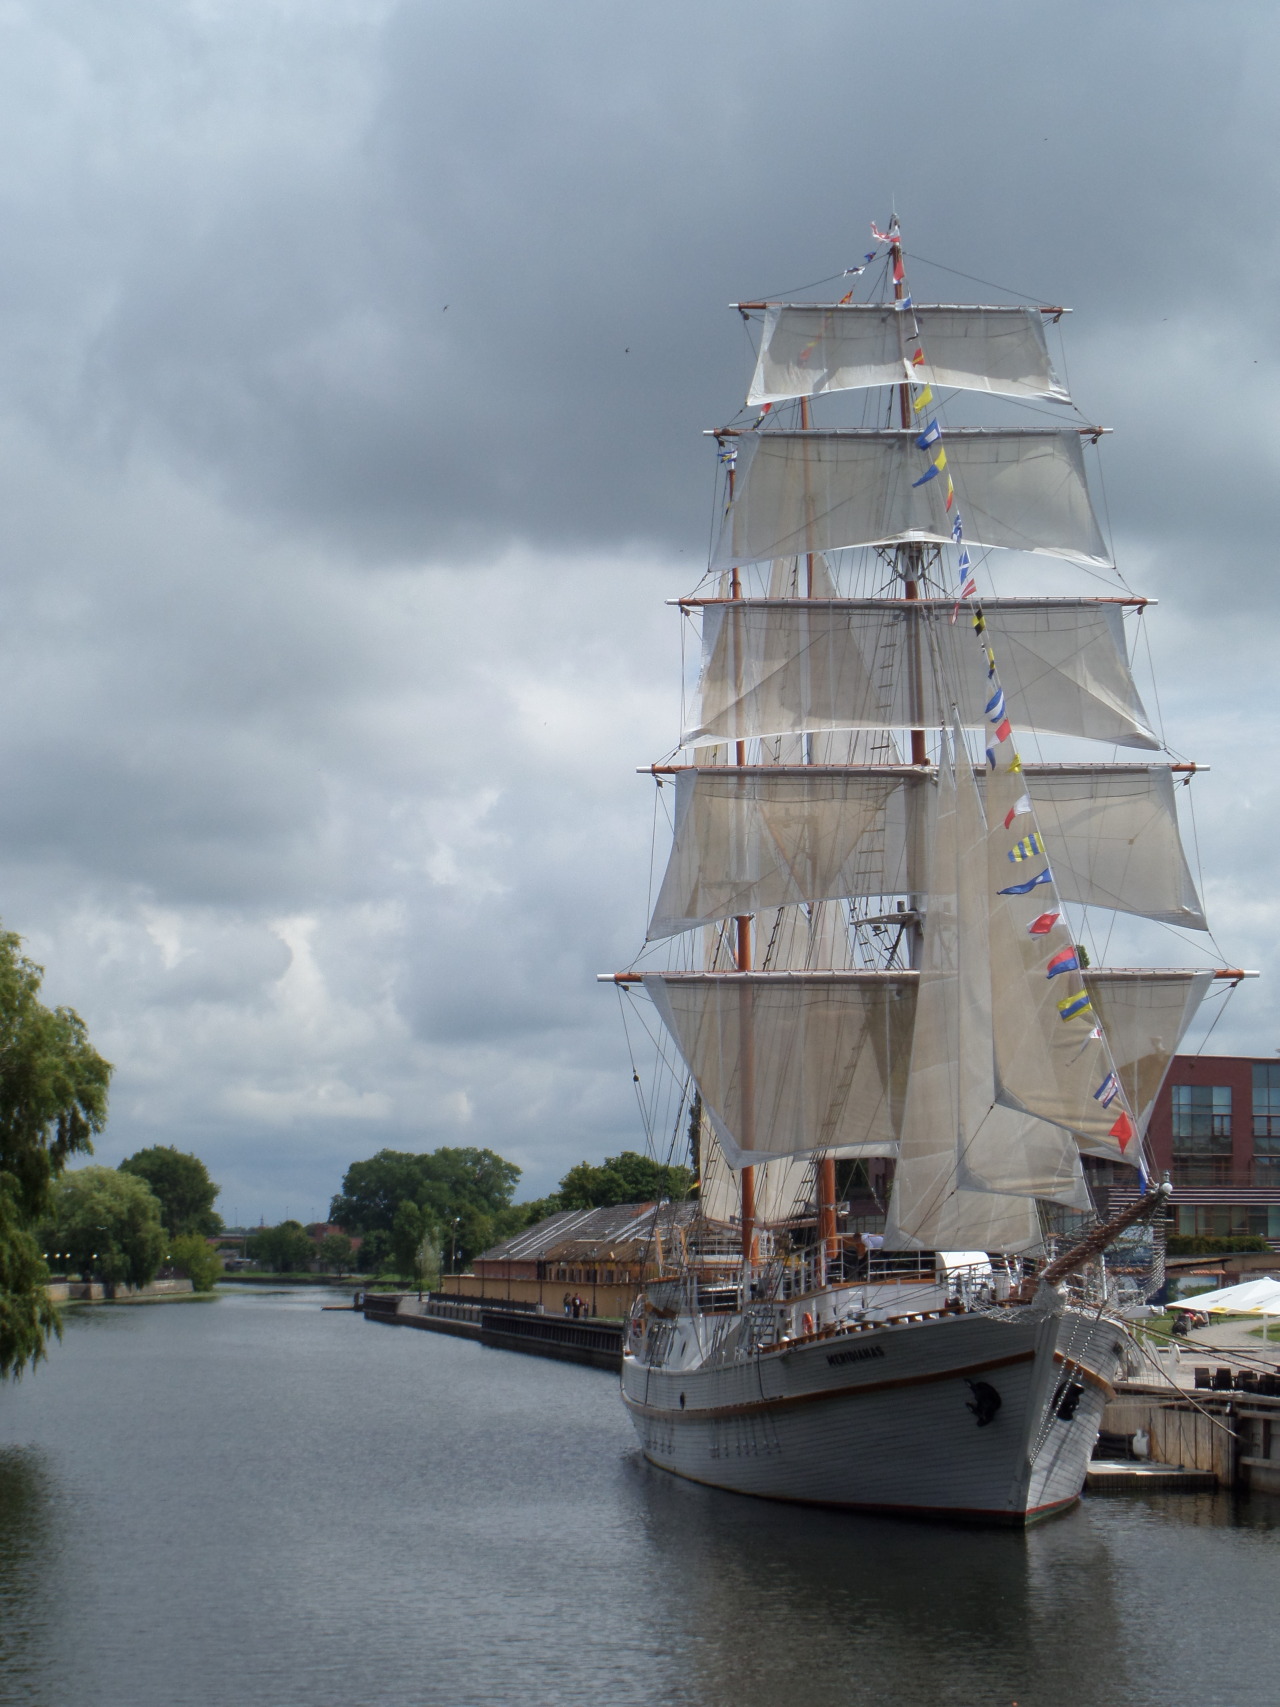 viewsthroughmylense:
“Ready to sail | Klaipeda, Lithuania
”